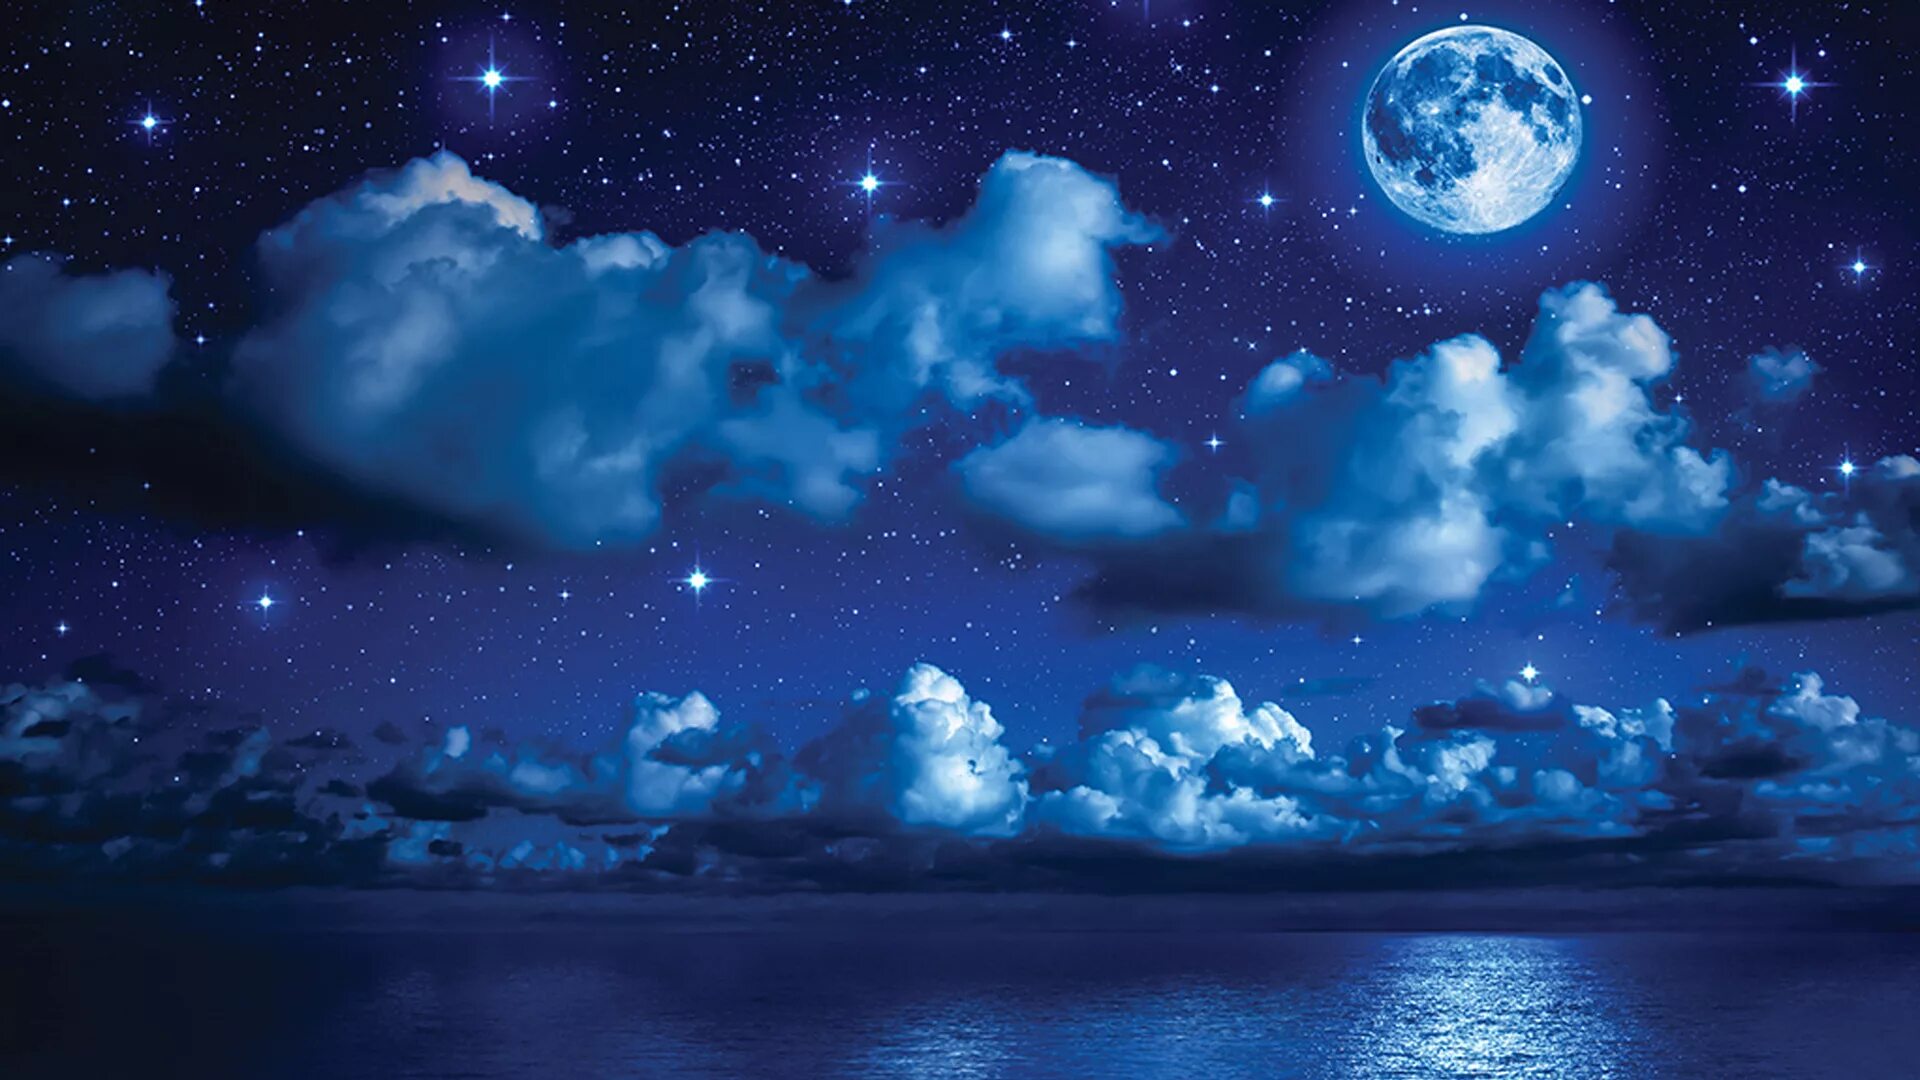 Картинки на ночь. Ночное небо с облаками. Ночное небо с луной. Ночные облака. Звезда с неба.